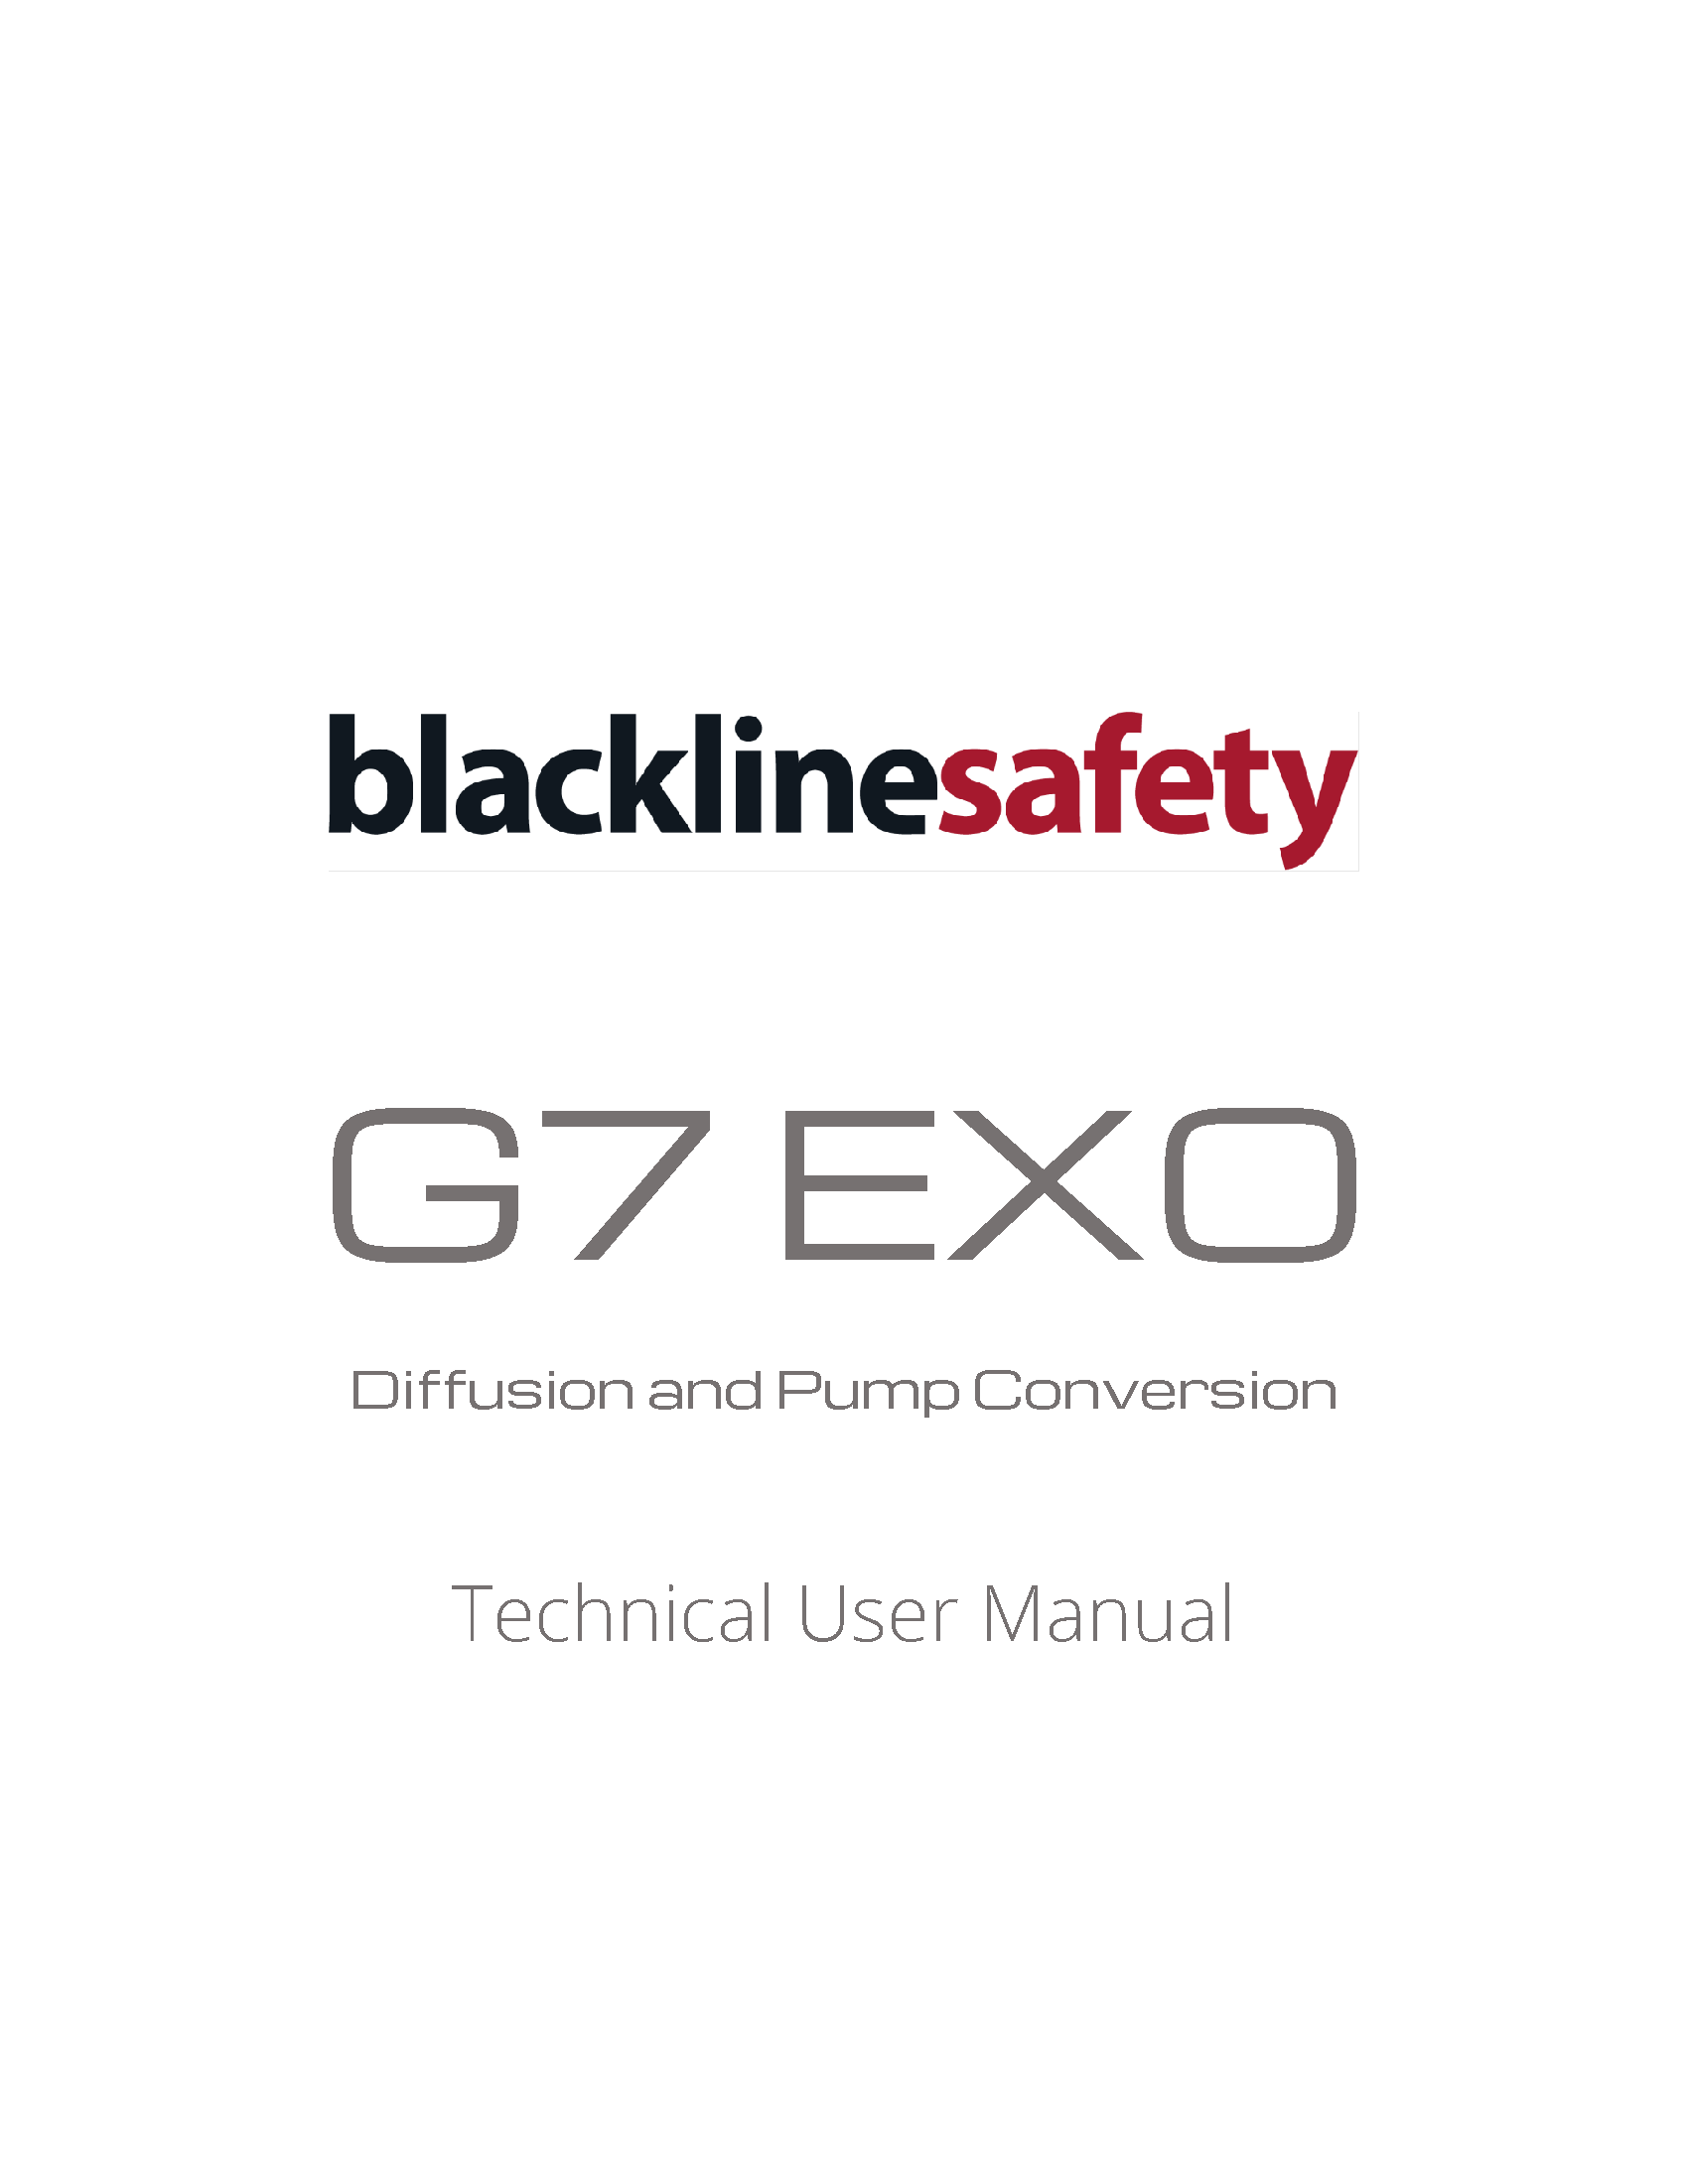 Couverture du manuel technique d'utilisation de la pompe et de la conversion de la diffusion G7 EXO